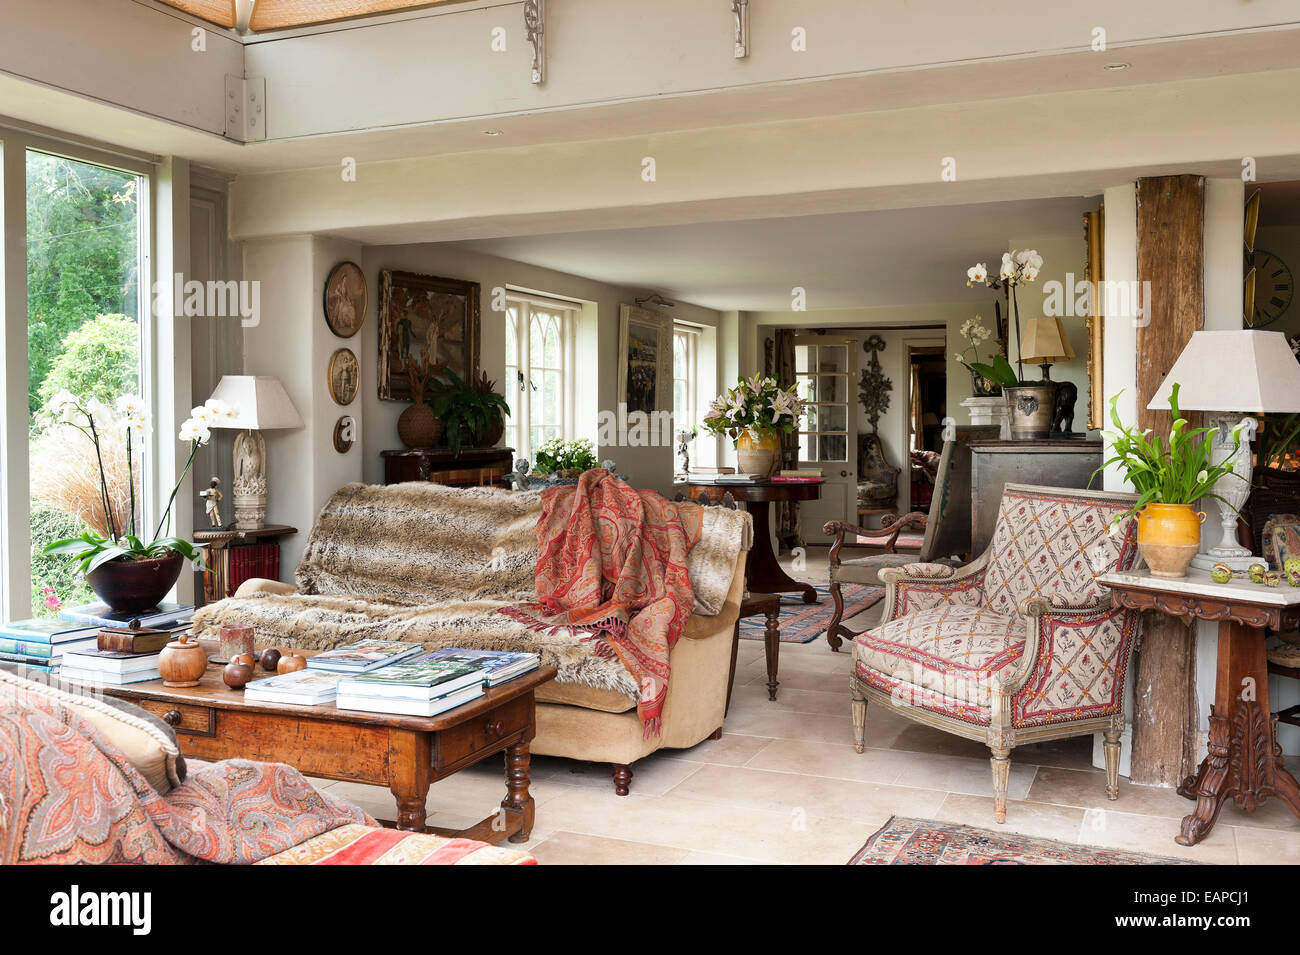 Offenen Wohnraum mit antiker Sitzmöbel gepolstert in einer Vielzahl von Textilien und Stoffen gefüllt Stockfoto